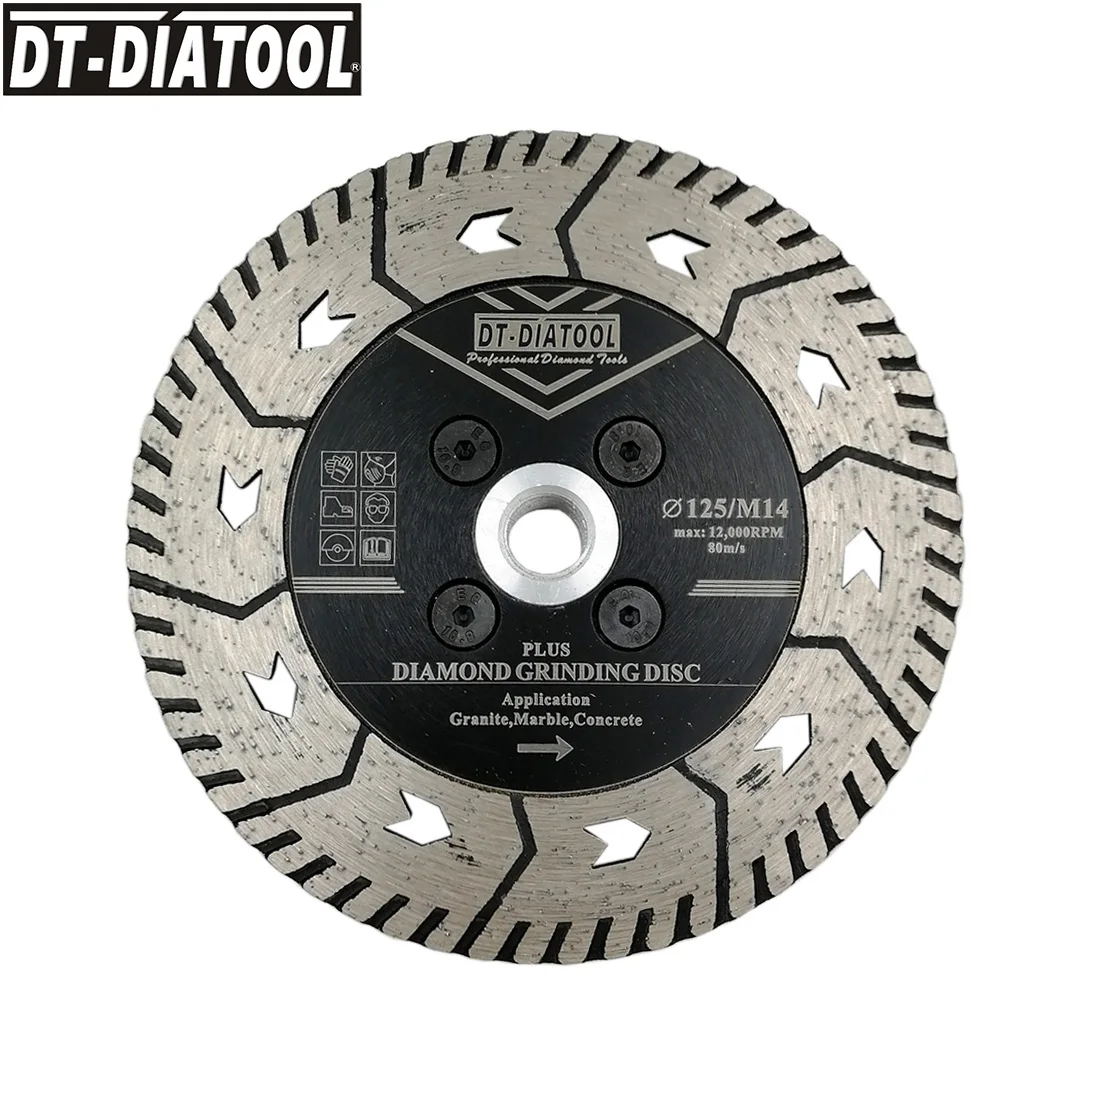 DT-DIATOOL 1pc 5inch/125mm de Diamante, Disco de Corte Grindng Lâminas de Serra com Rosca M14 para Moagem de Granito, Mármore, Concreto roda